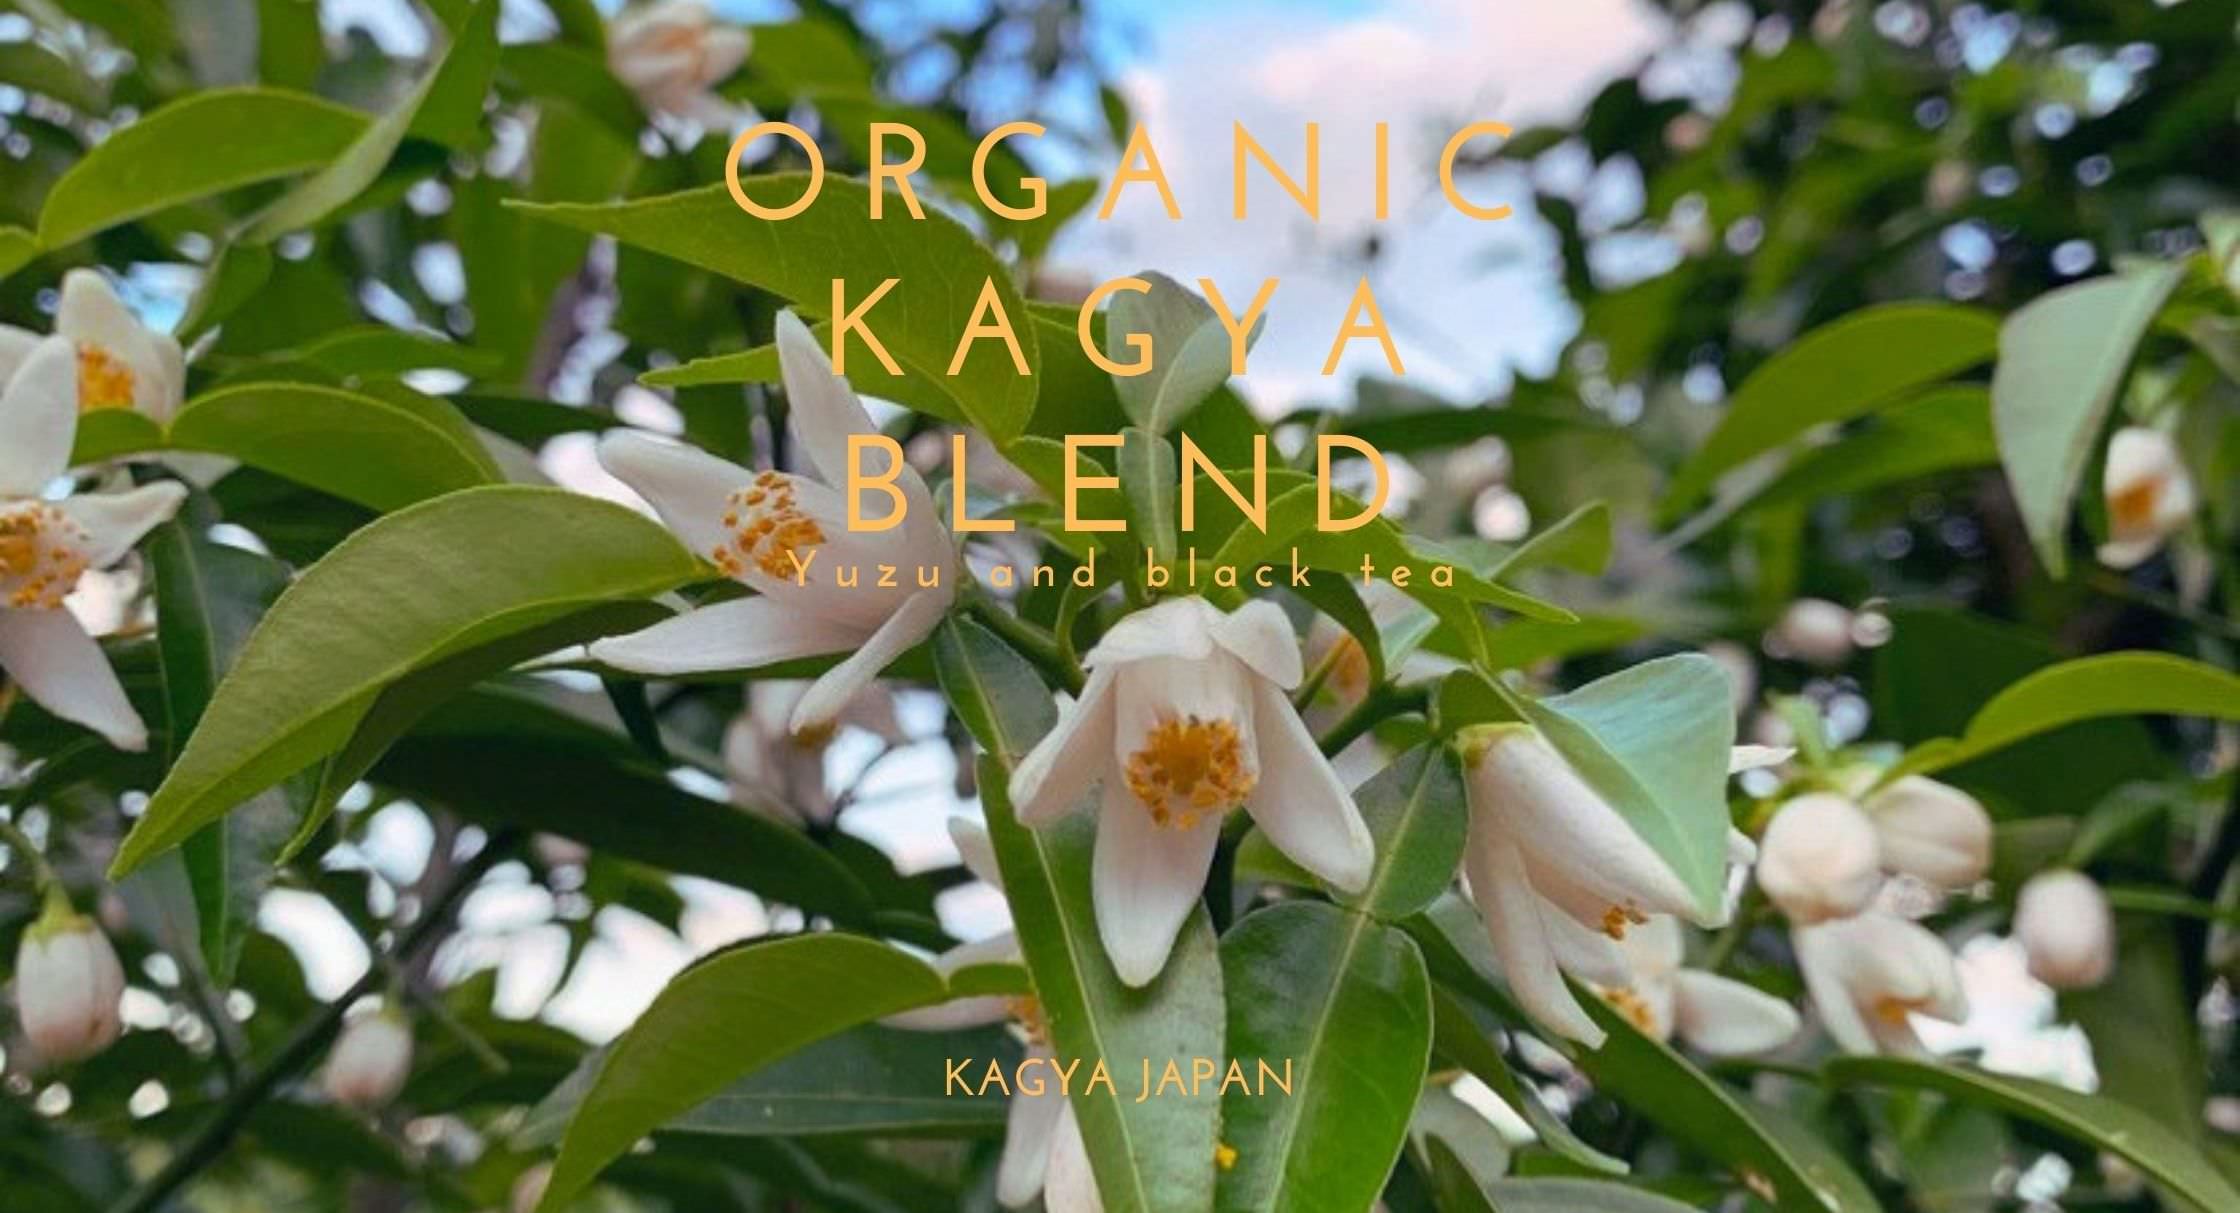 柚子のエッセンシャルオイルブランド『KAGYA JAPAN』が
有機柚子と有機紅茶のブレンドティー
『オーガニック・カグヤブレンド』を6月1日より発売